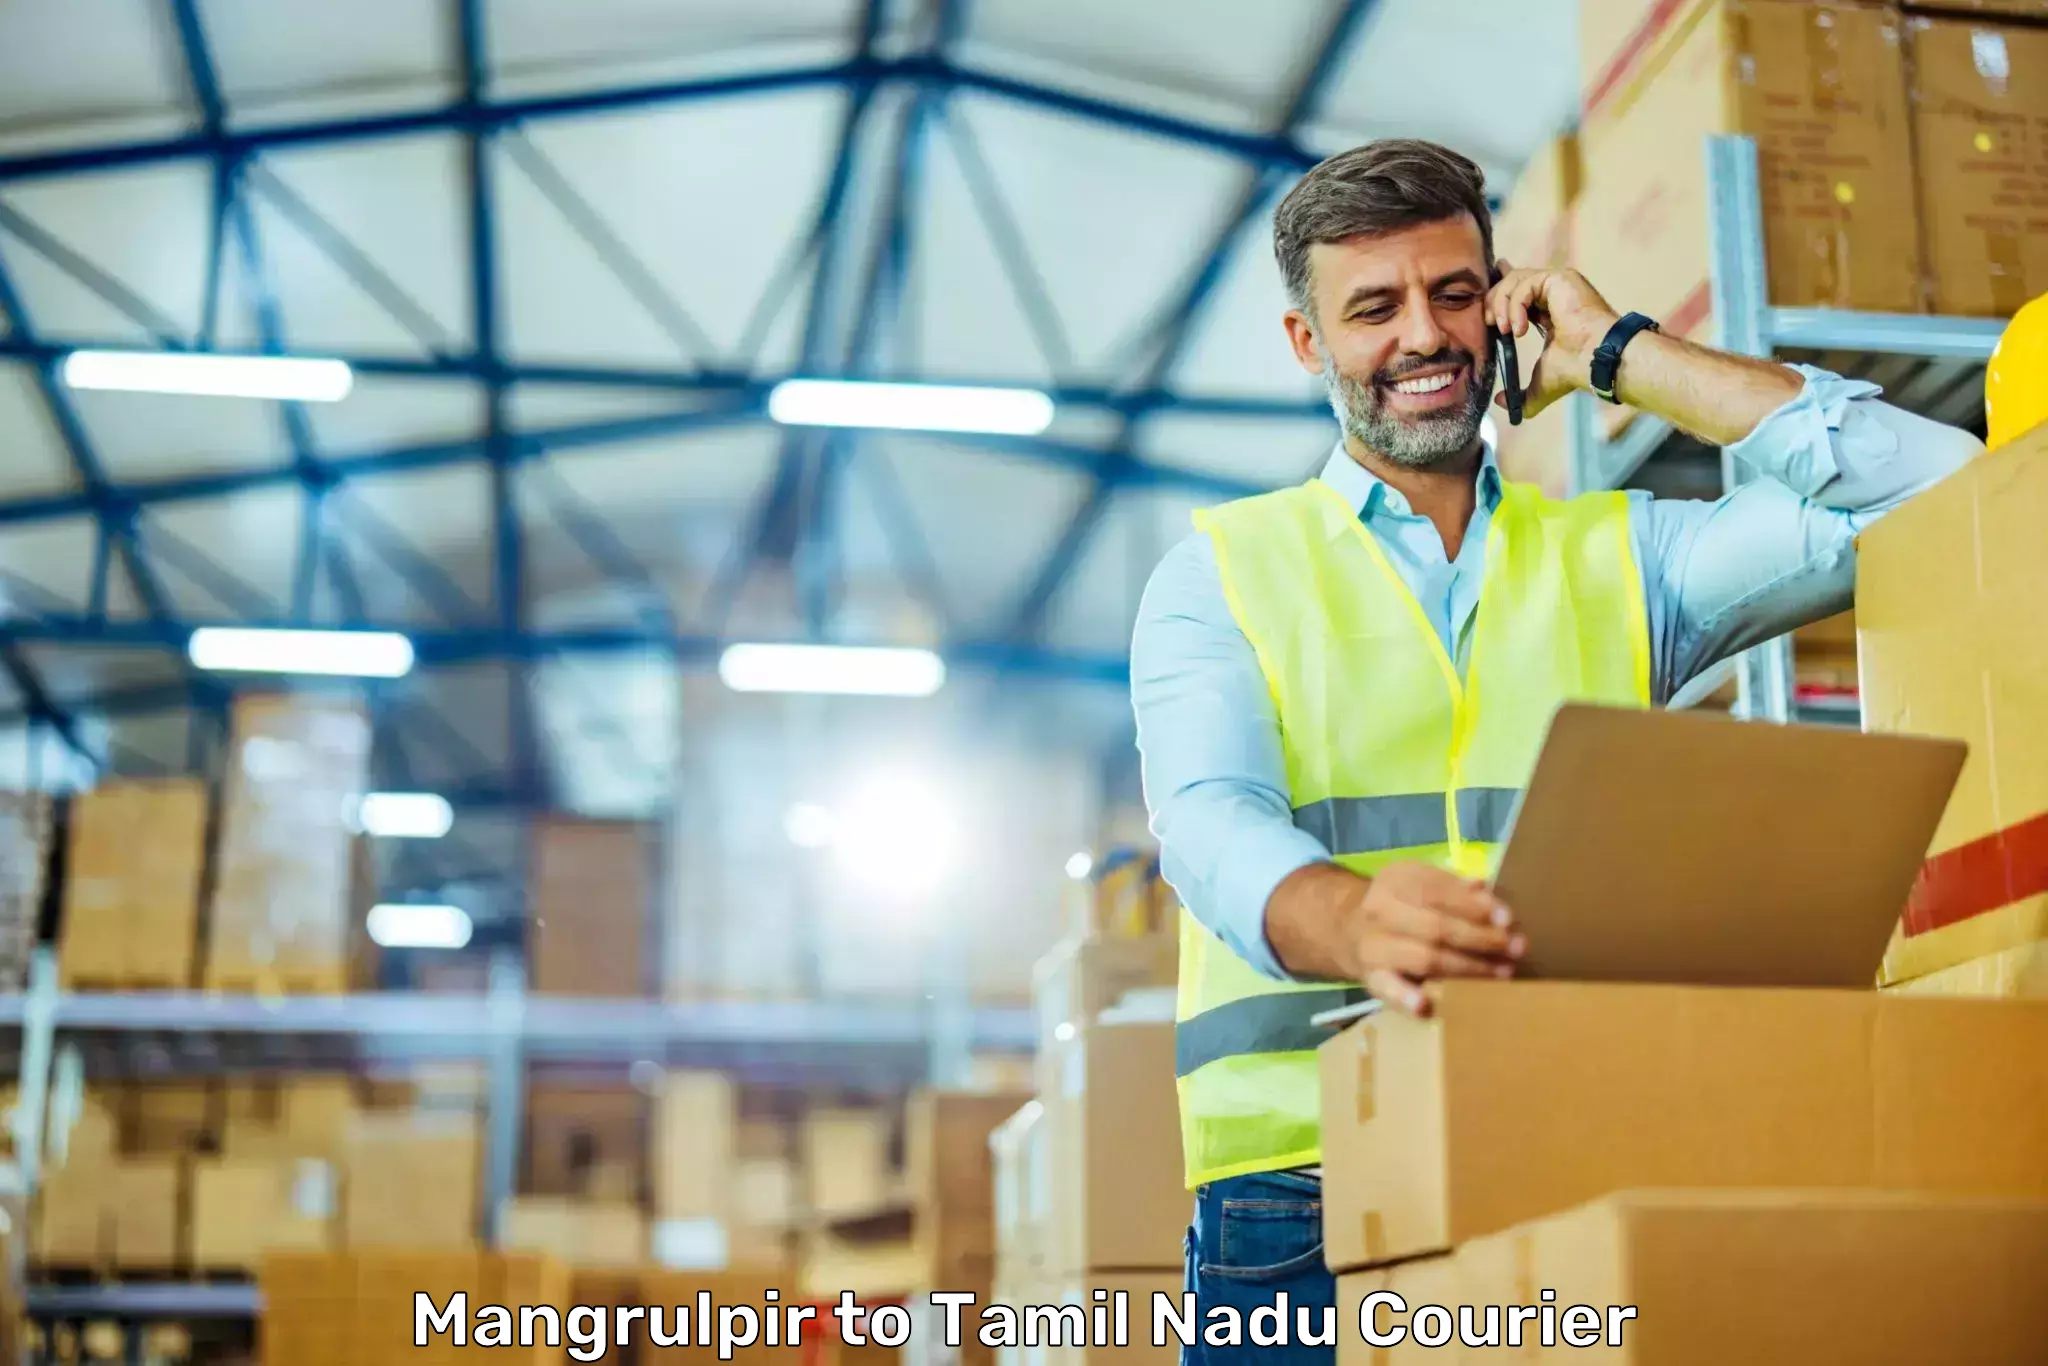 Customizable shipping options Mangrulpir to Gudiyattam